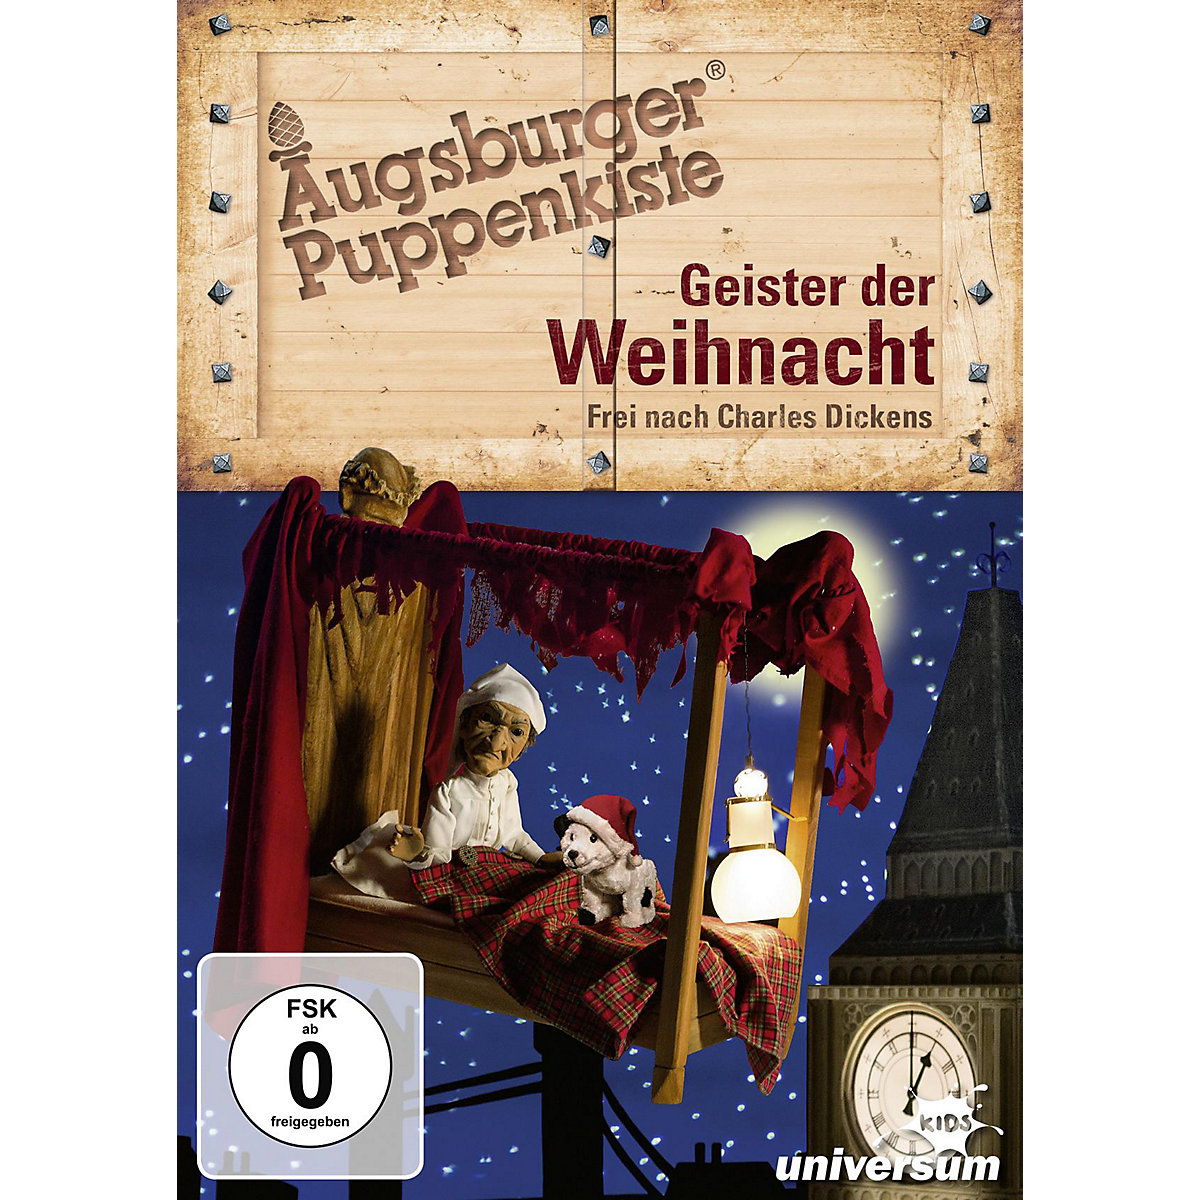 LEONINE DVD Augsburger Puppenkiste Geister der Weihnacht